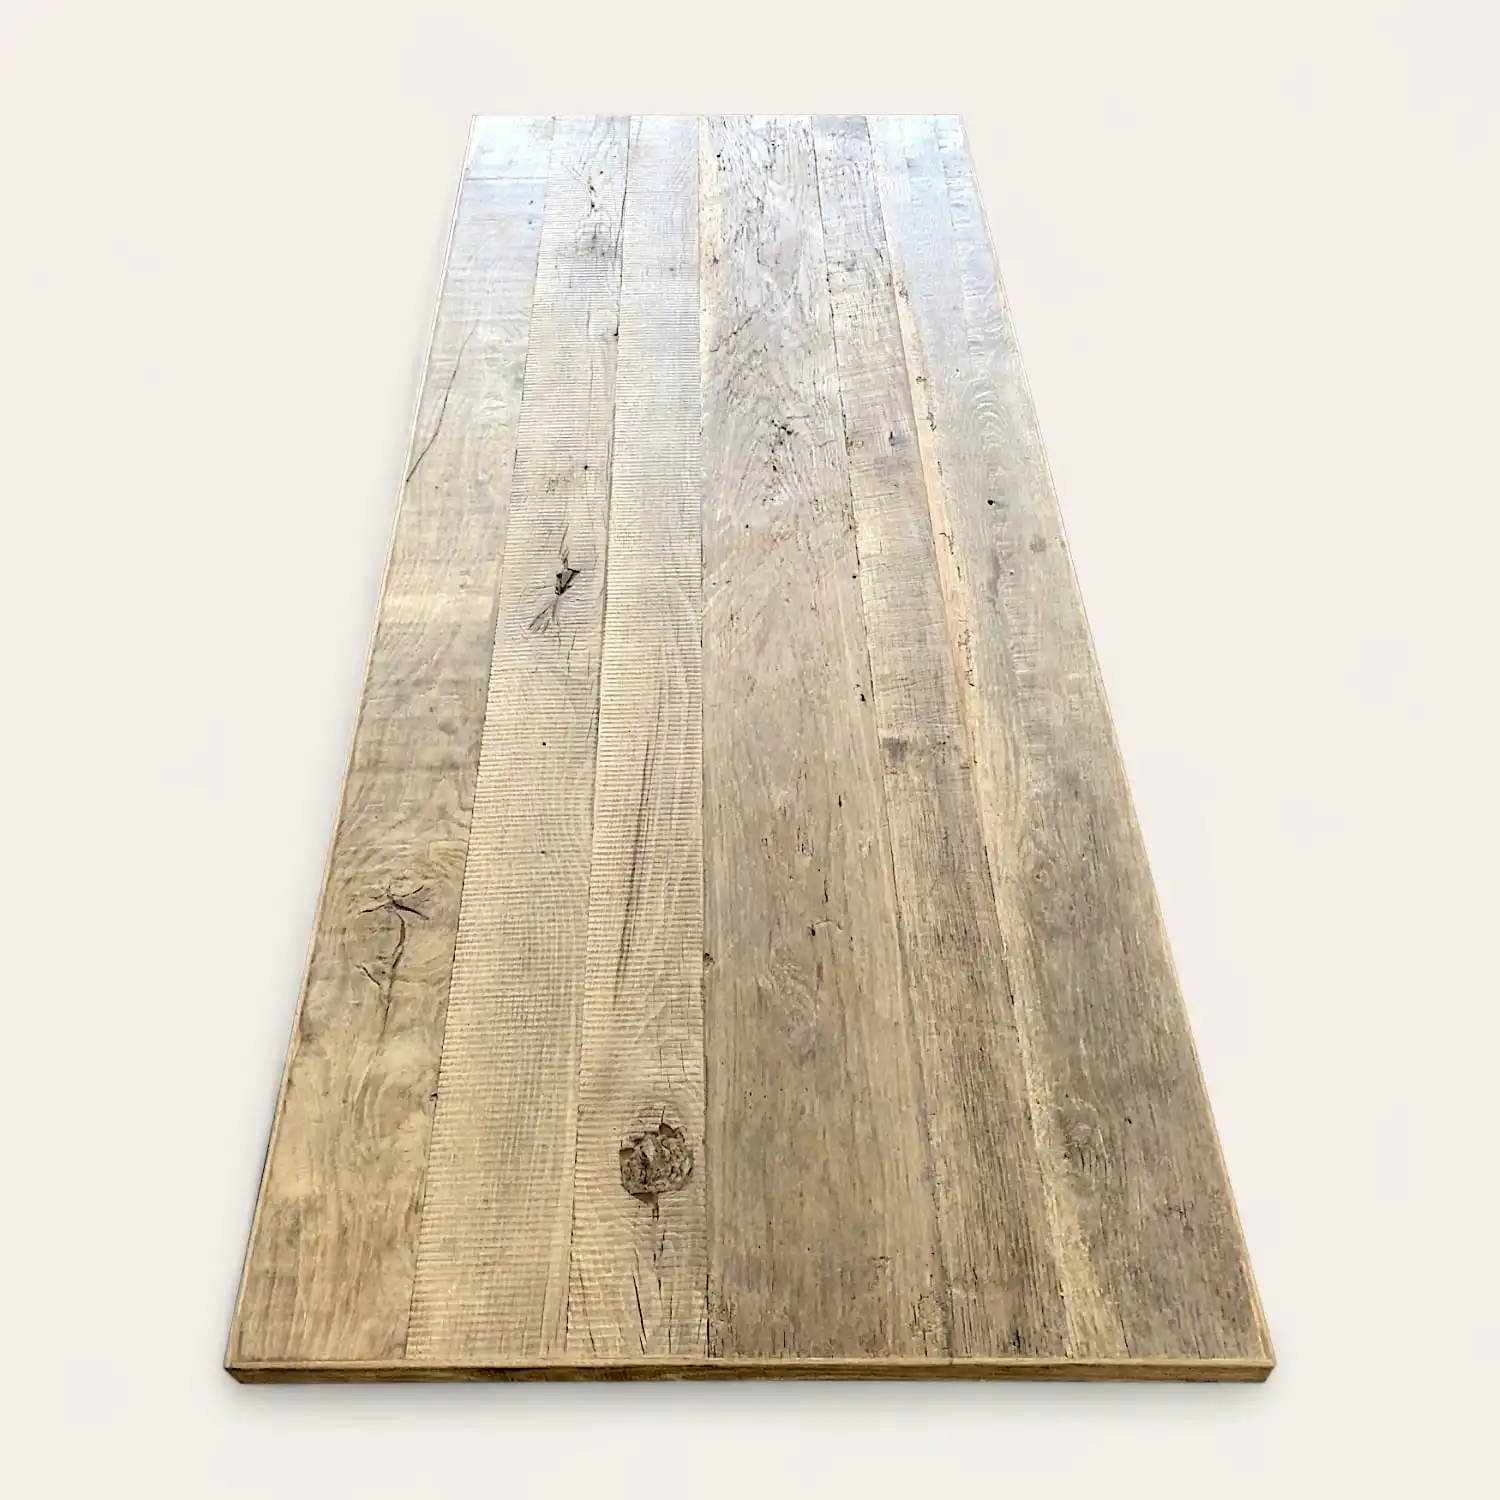  Une planche de bois unie avec des veines et des nœuds visibles appuyée contre un mur blanc est classée dans la catégorie « panneau 5 plis vieux bois ». 